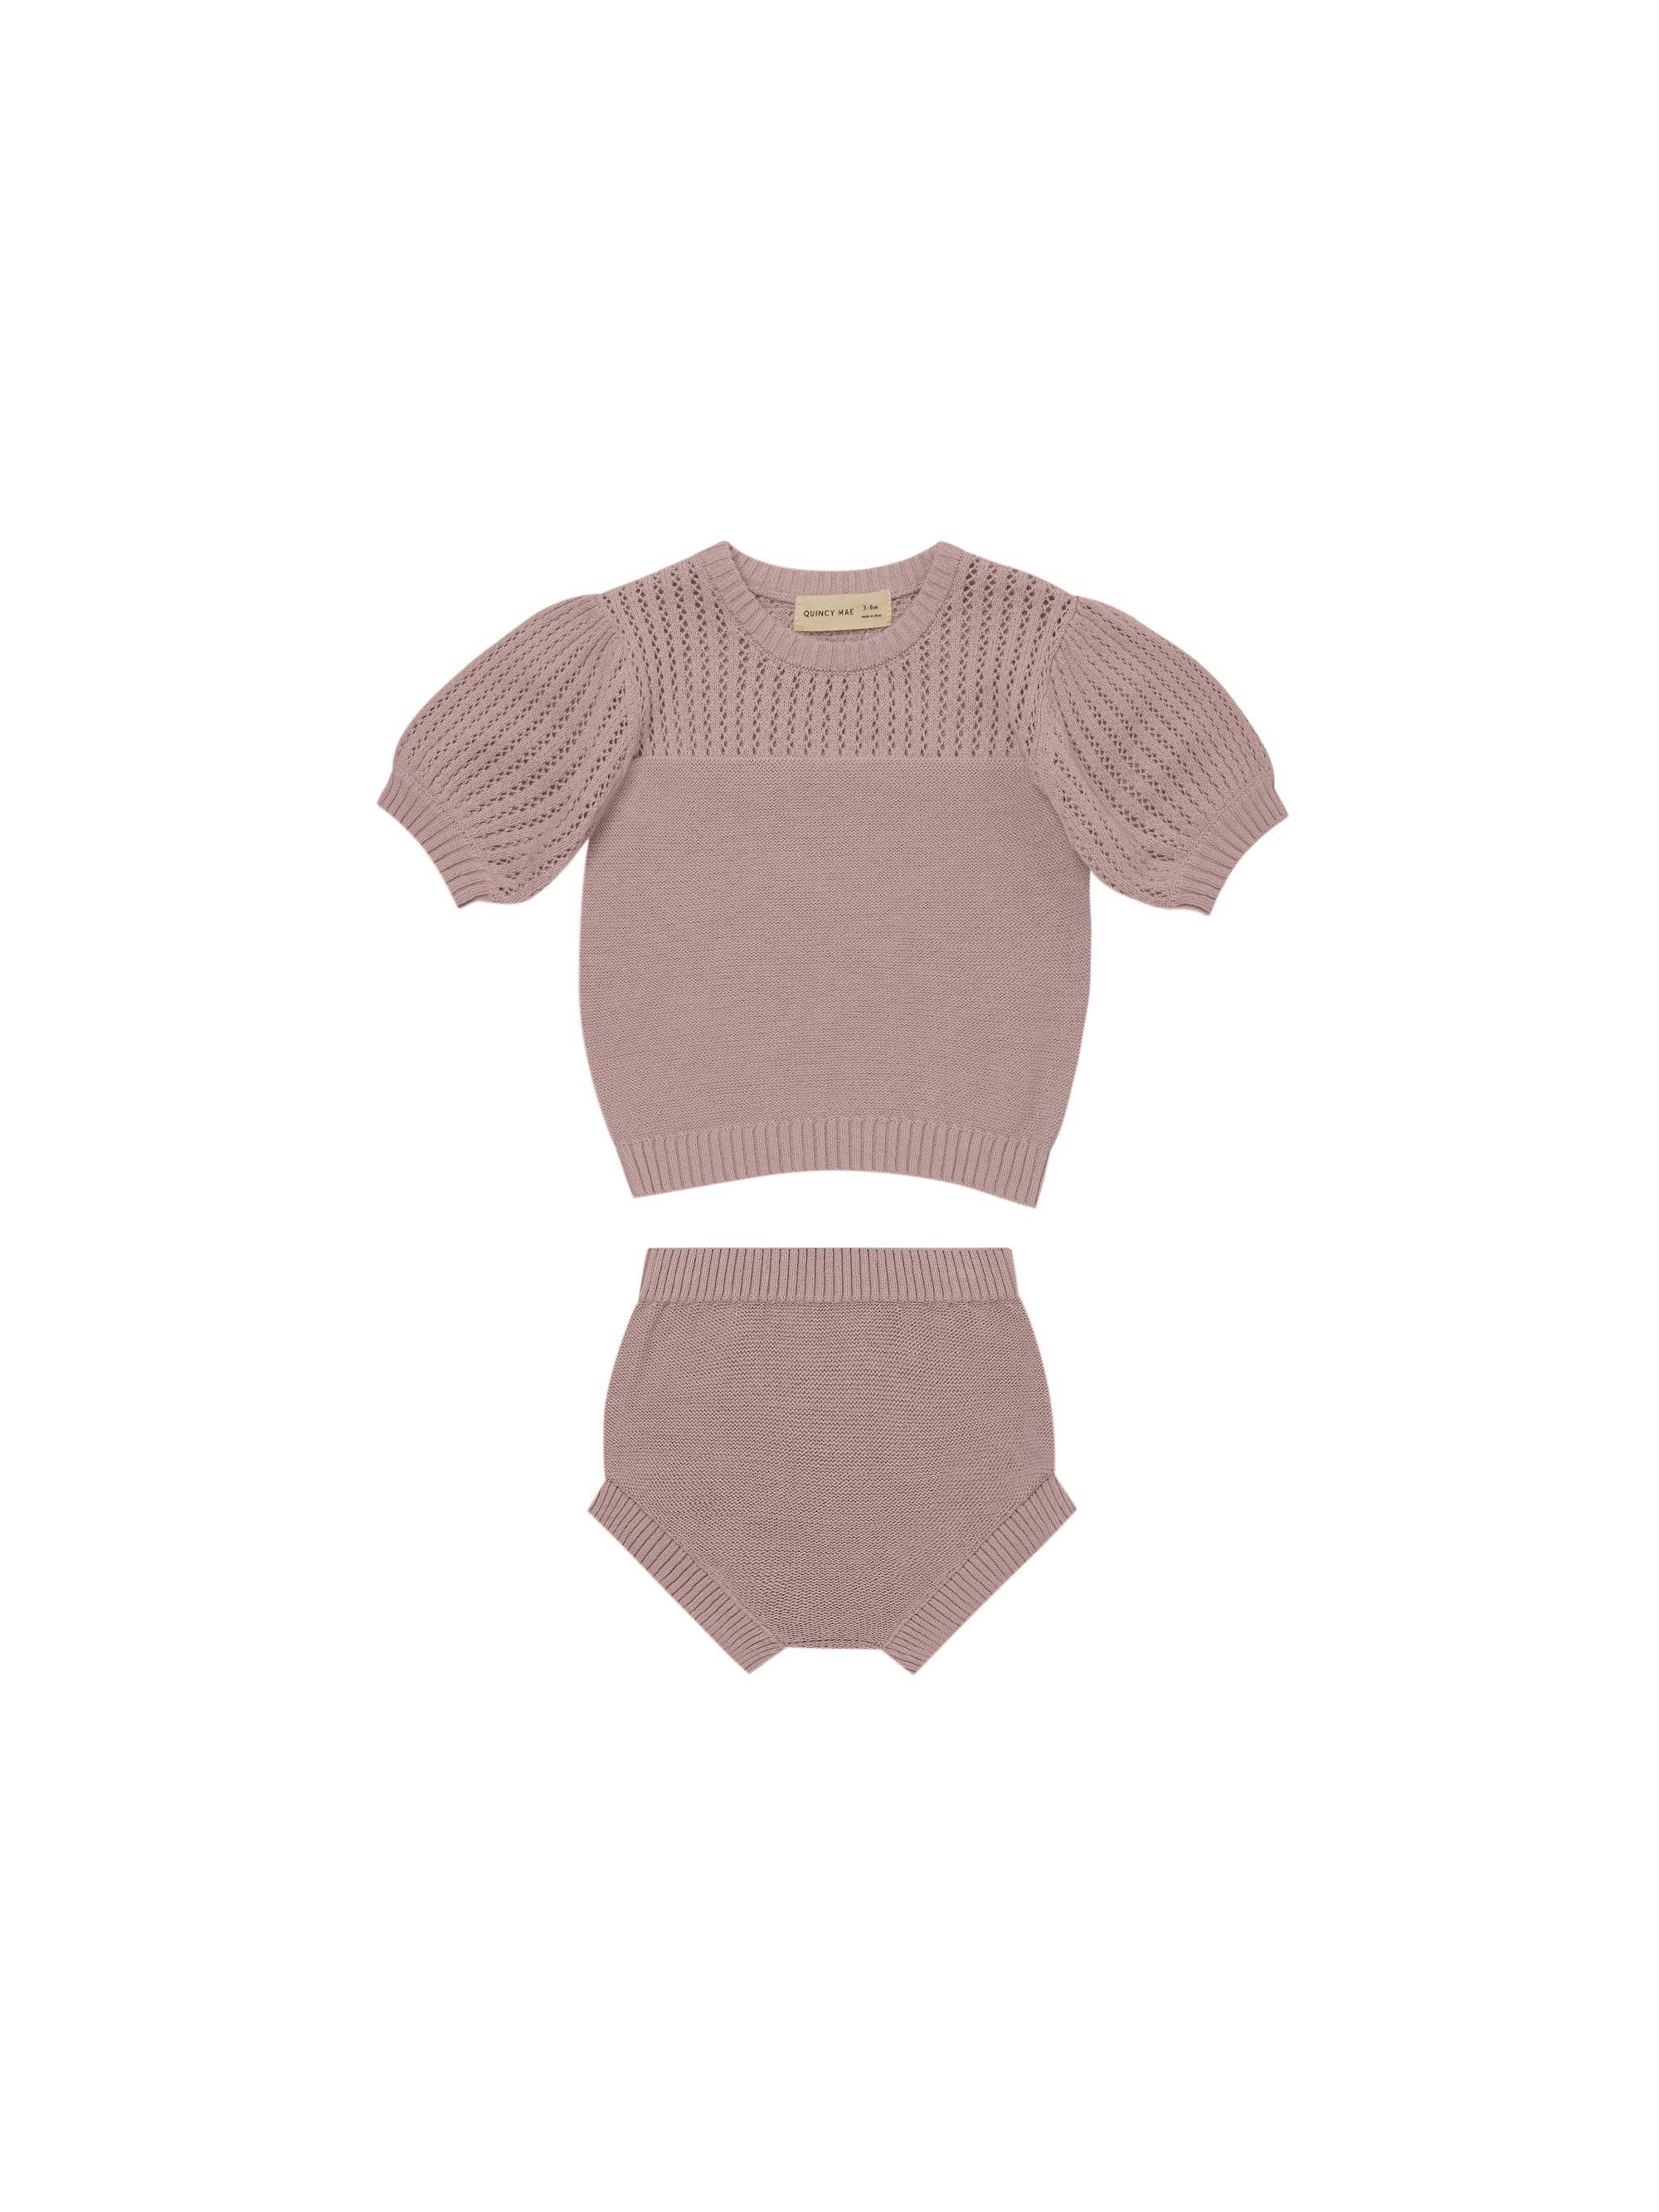 Lilac Pointelle Knit Set - Twinkle Twinkle Little One